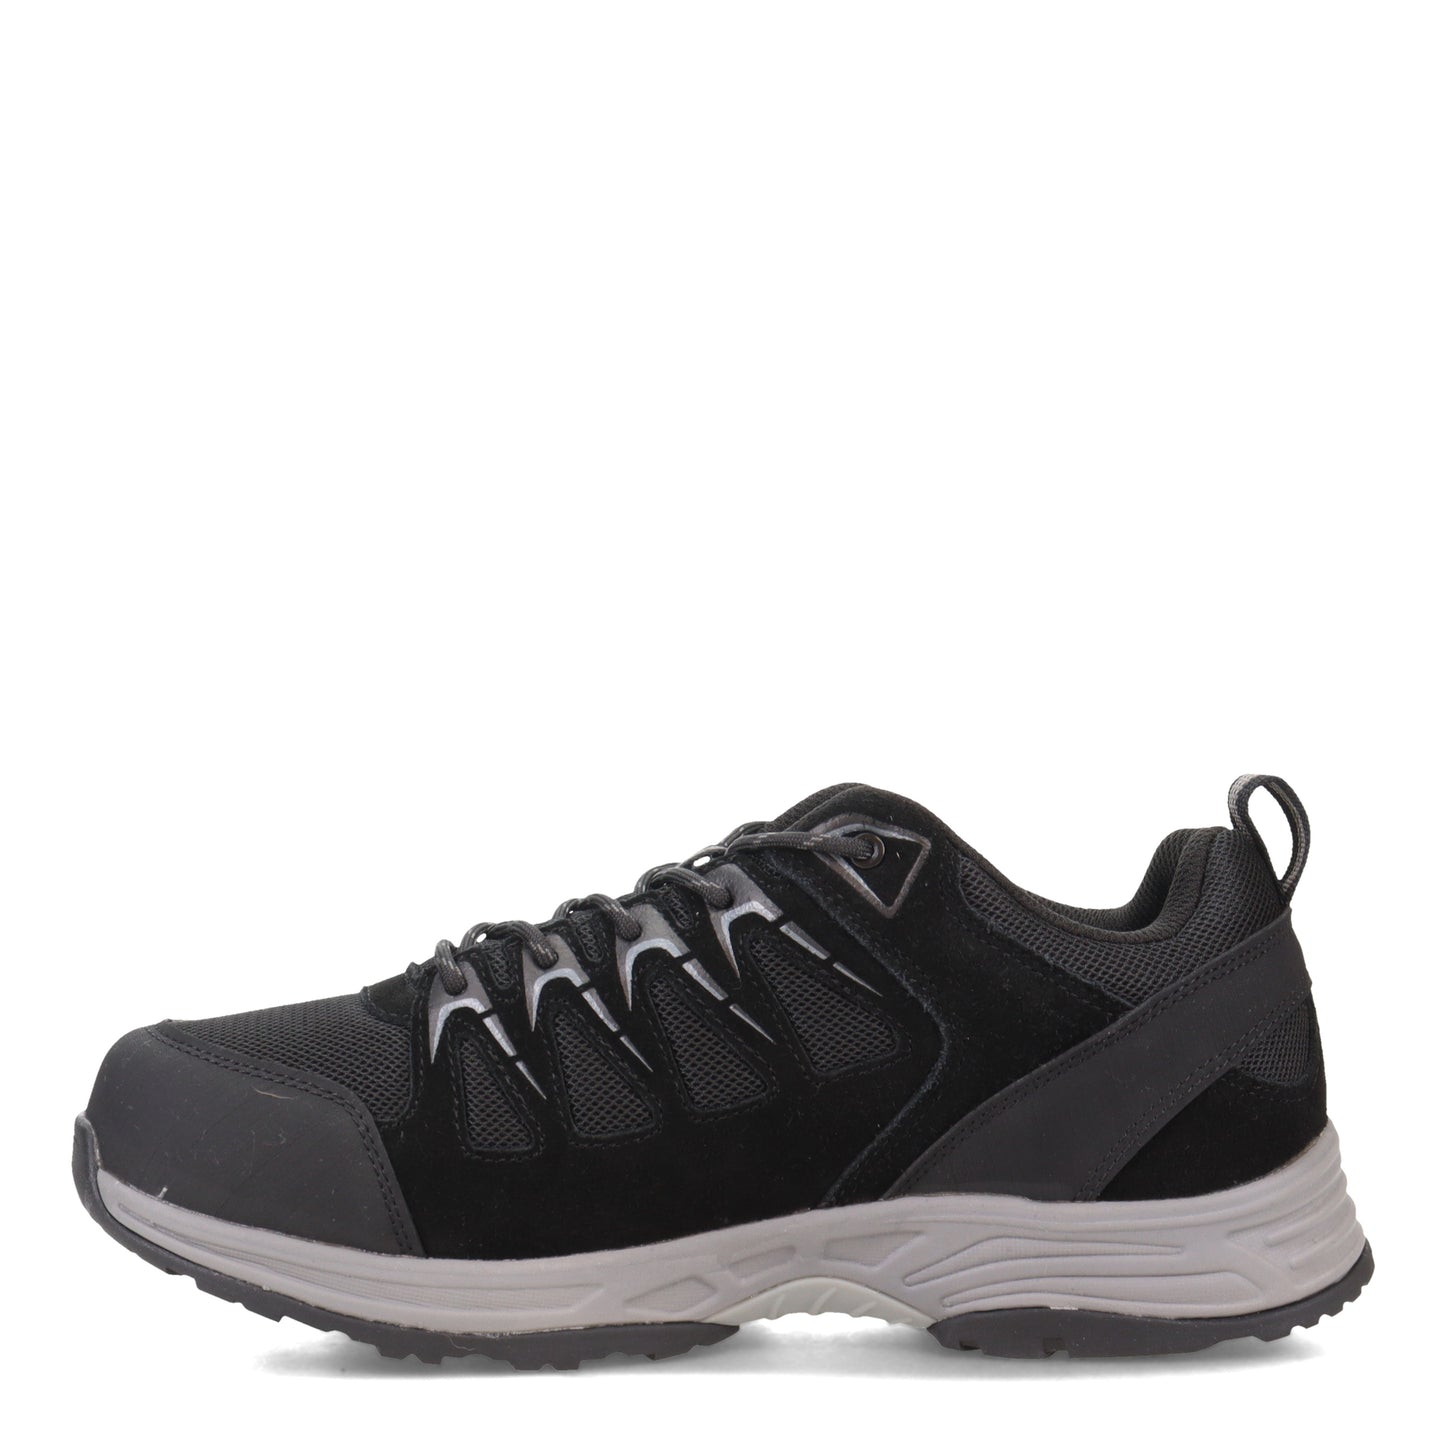 Peltz Shoes  Men's Propet Cooper Hiking Shoe Black MOA062M-BLK